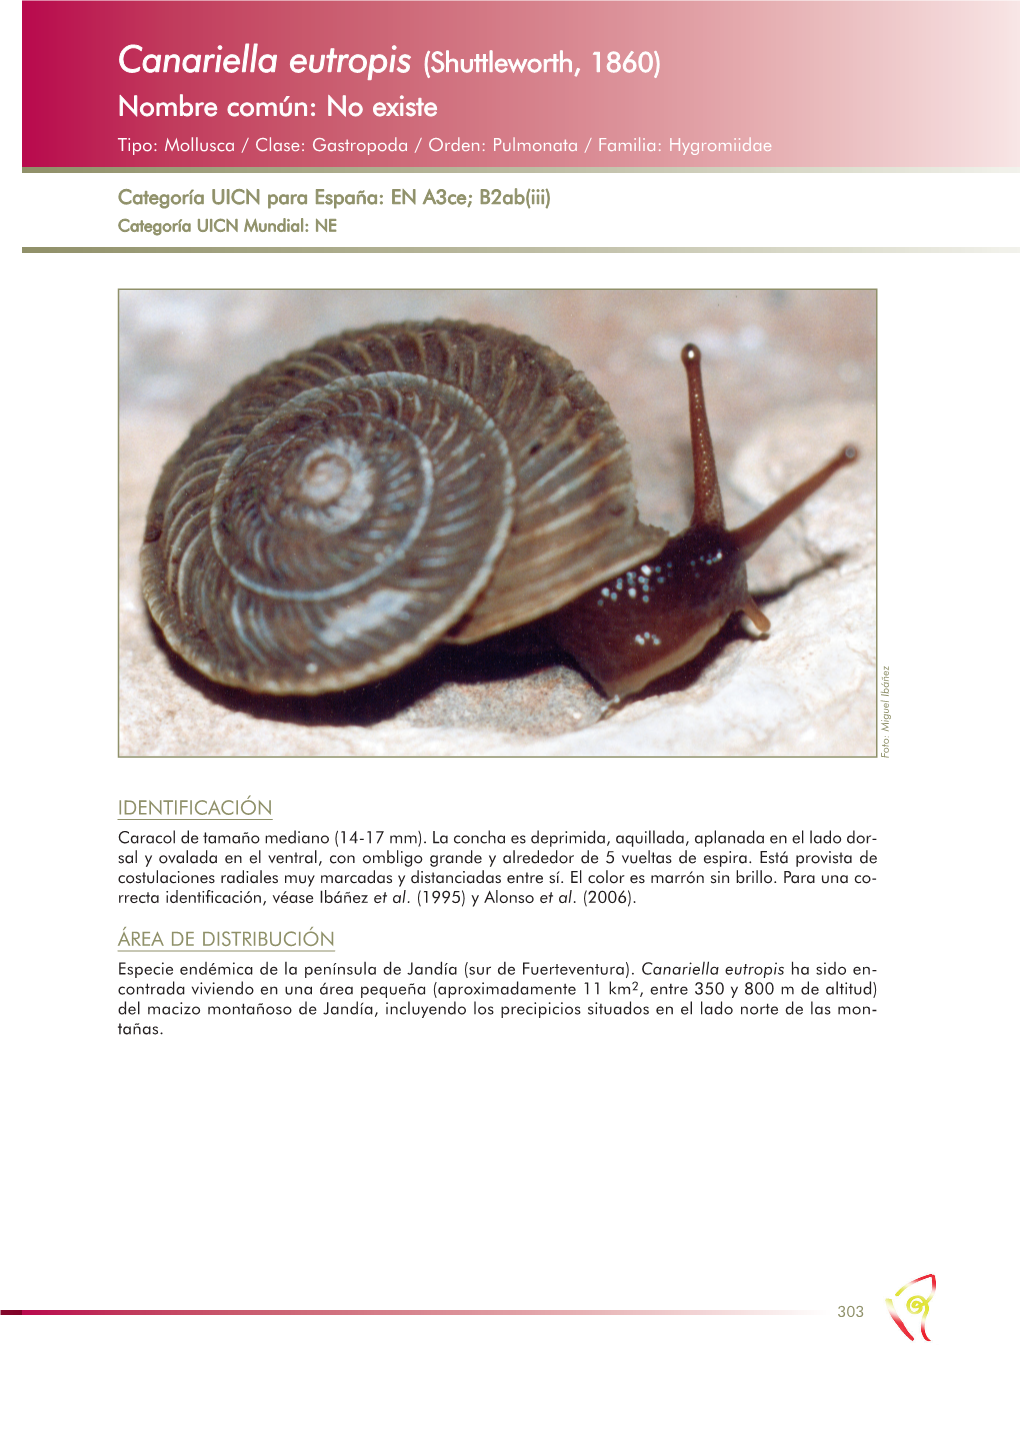 Canariella Eutropis (Shuttleworth, 1860) Nombre Común: No Existe Tipo: Mollusca / Clase: Gastropoda / Orden: Pulmonata / Familia: Hygromiidae